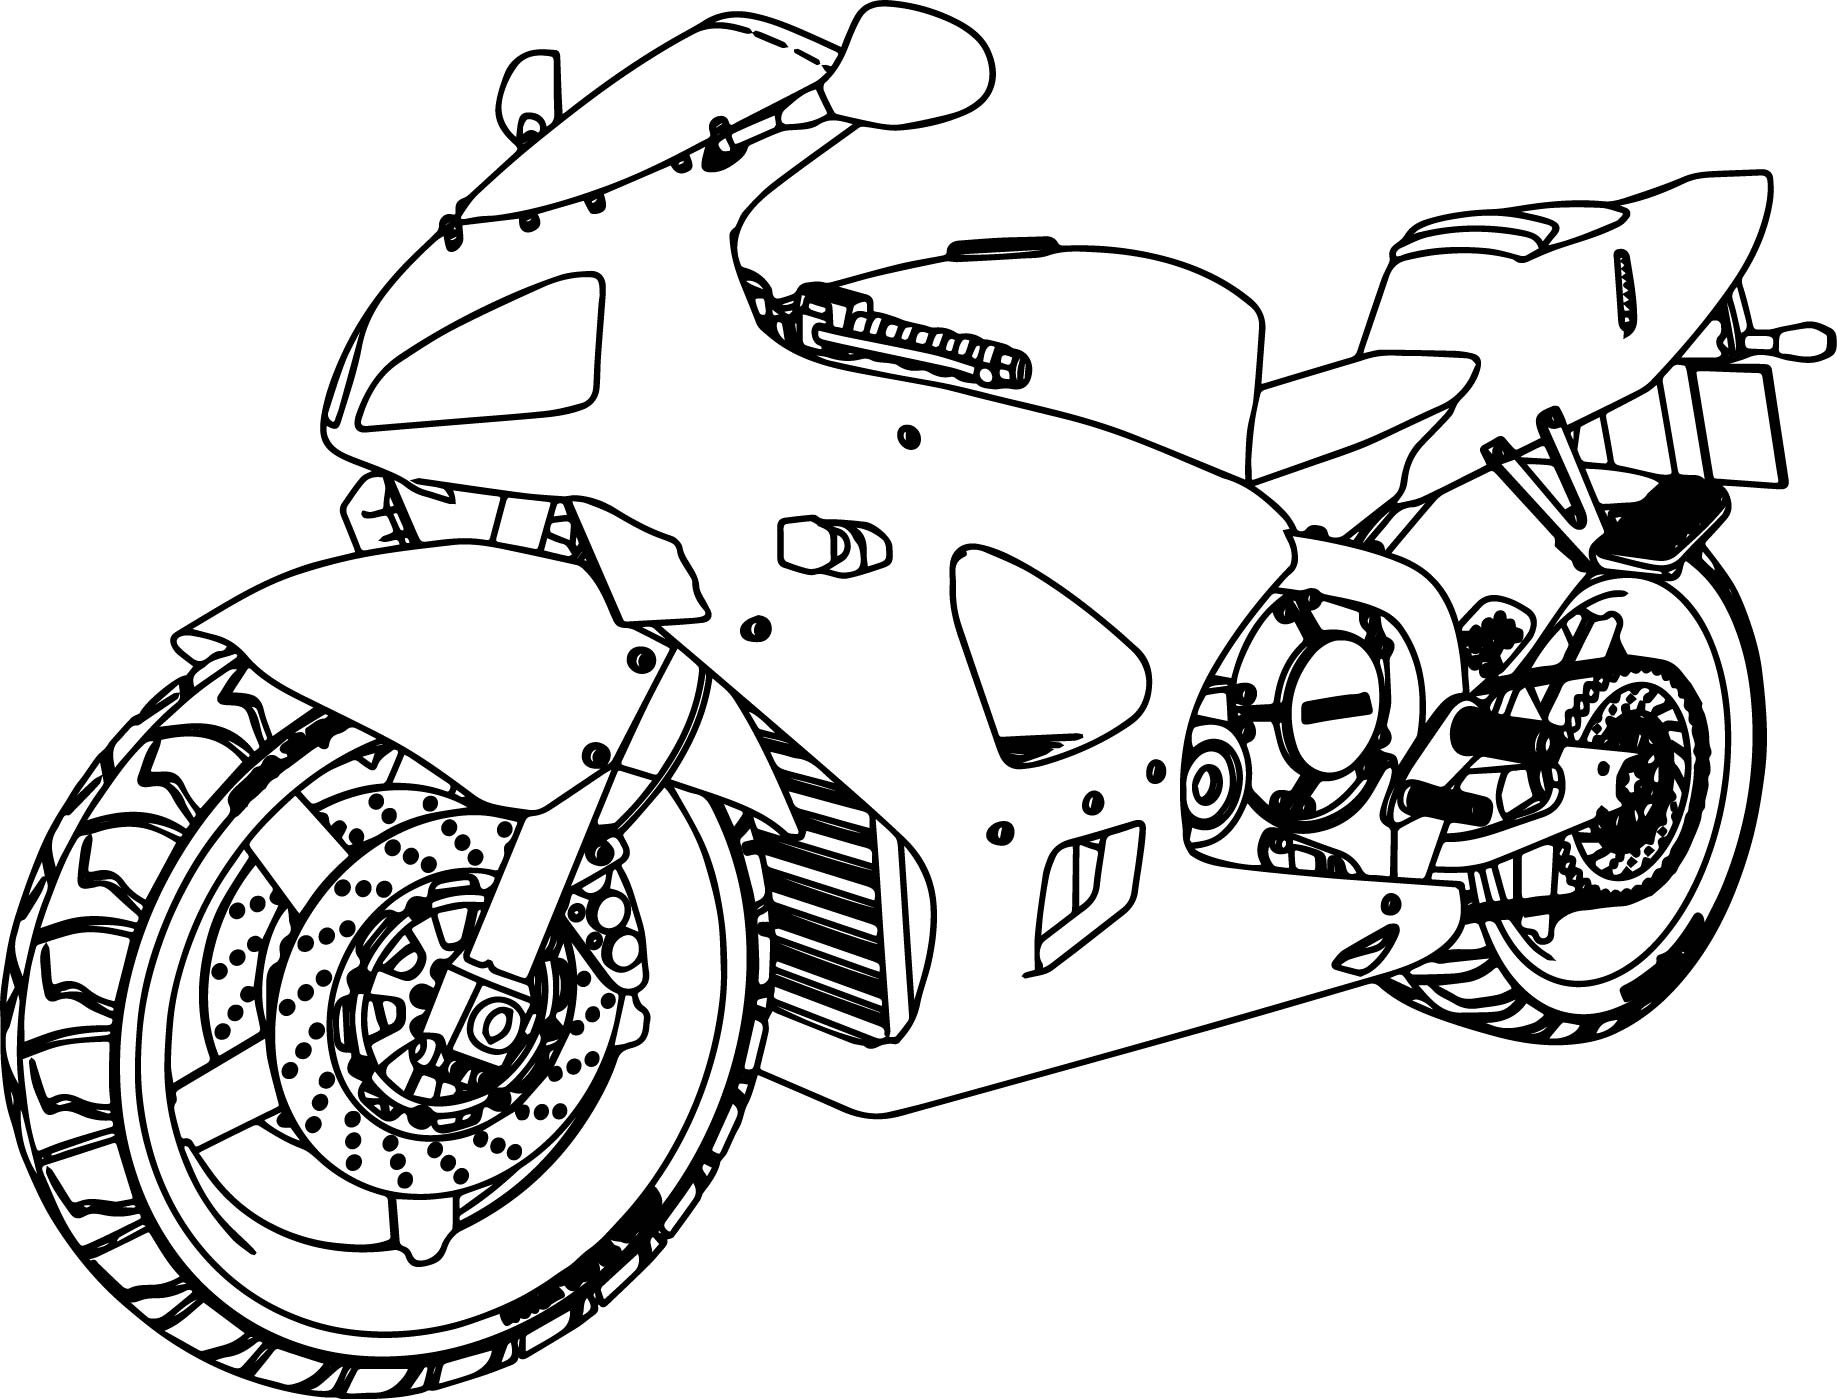 Раскраски для мальчиков мотоциклы